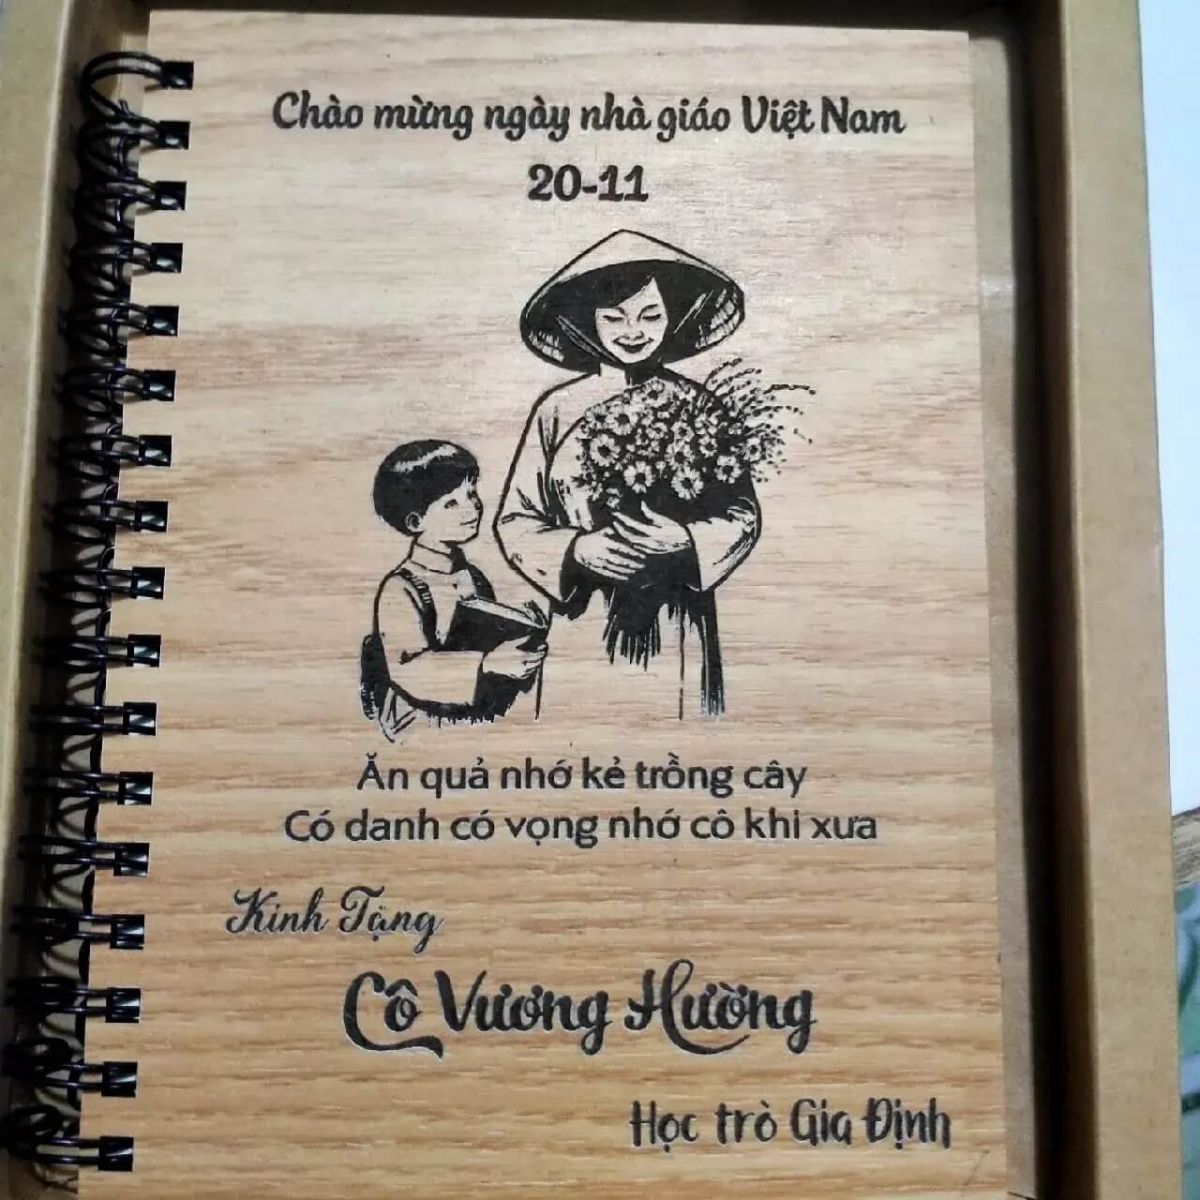 Sổ tay bìa gỗ chào mừng ngày nhà giáo Việt Nam